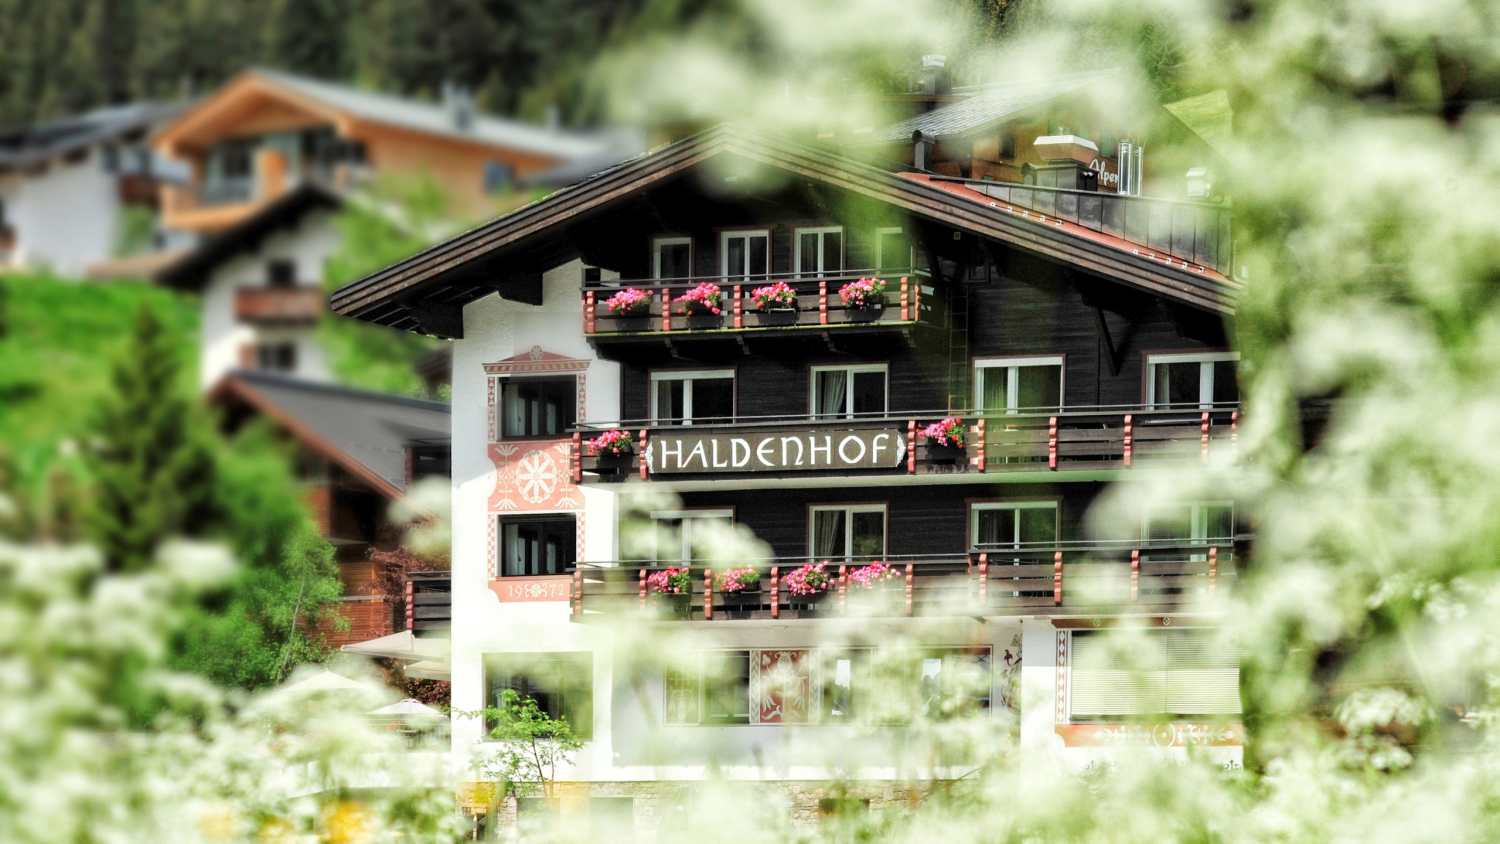 Hotel Haldenhof Lech, Vorarlberg - Austria